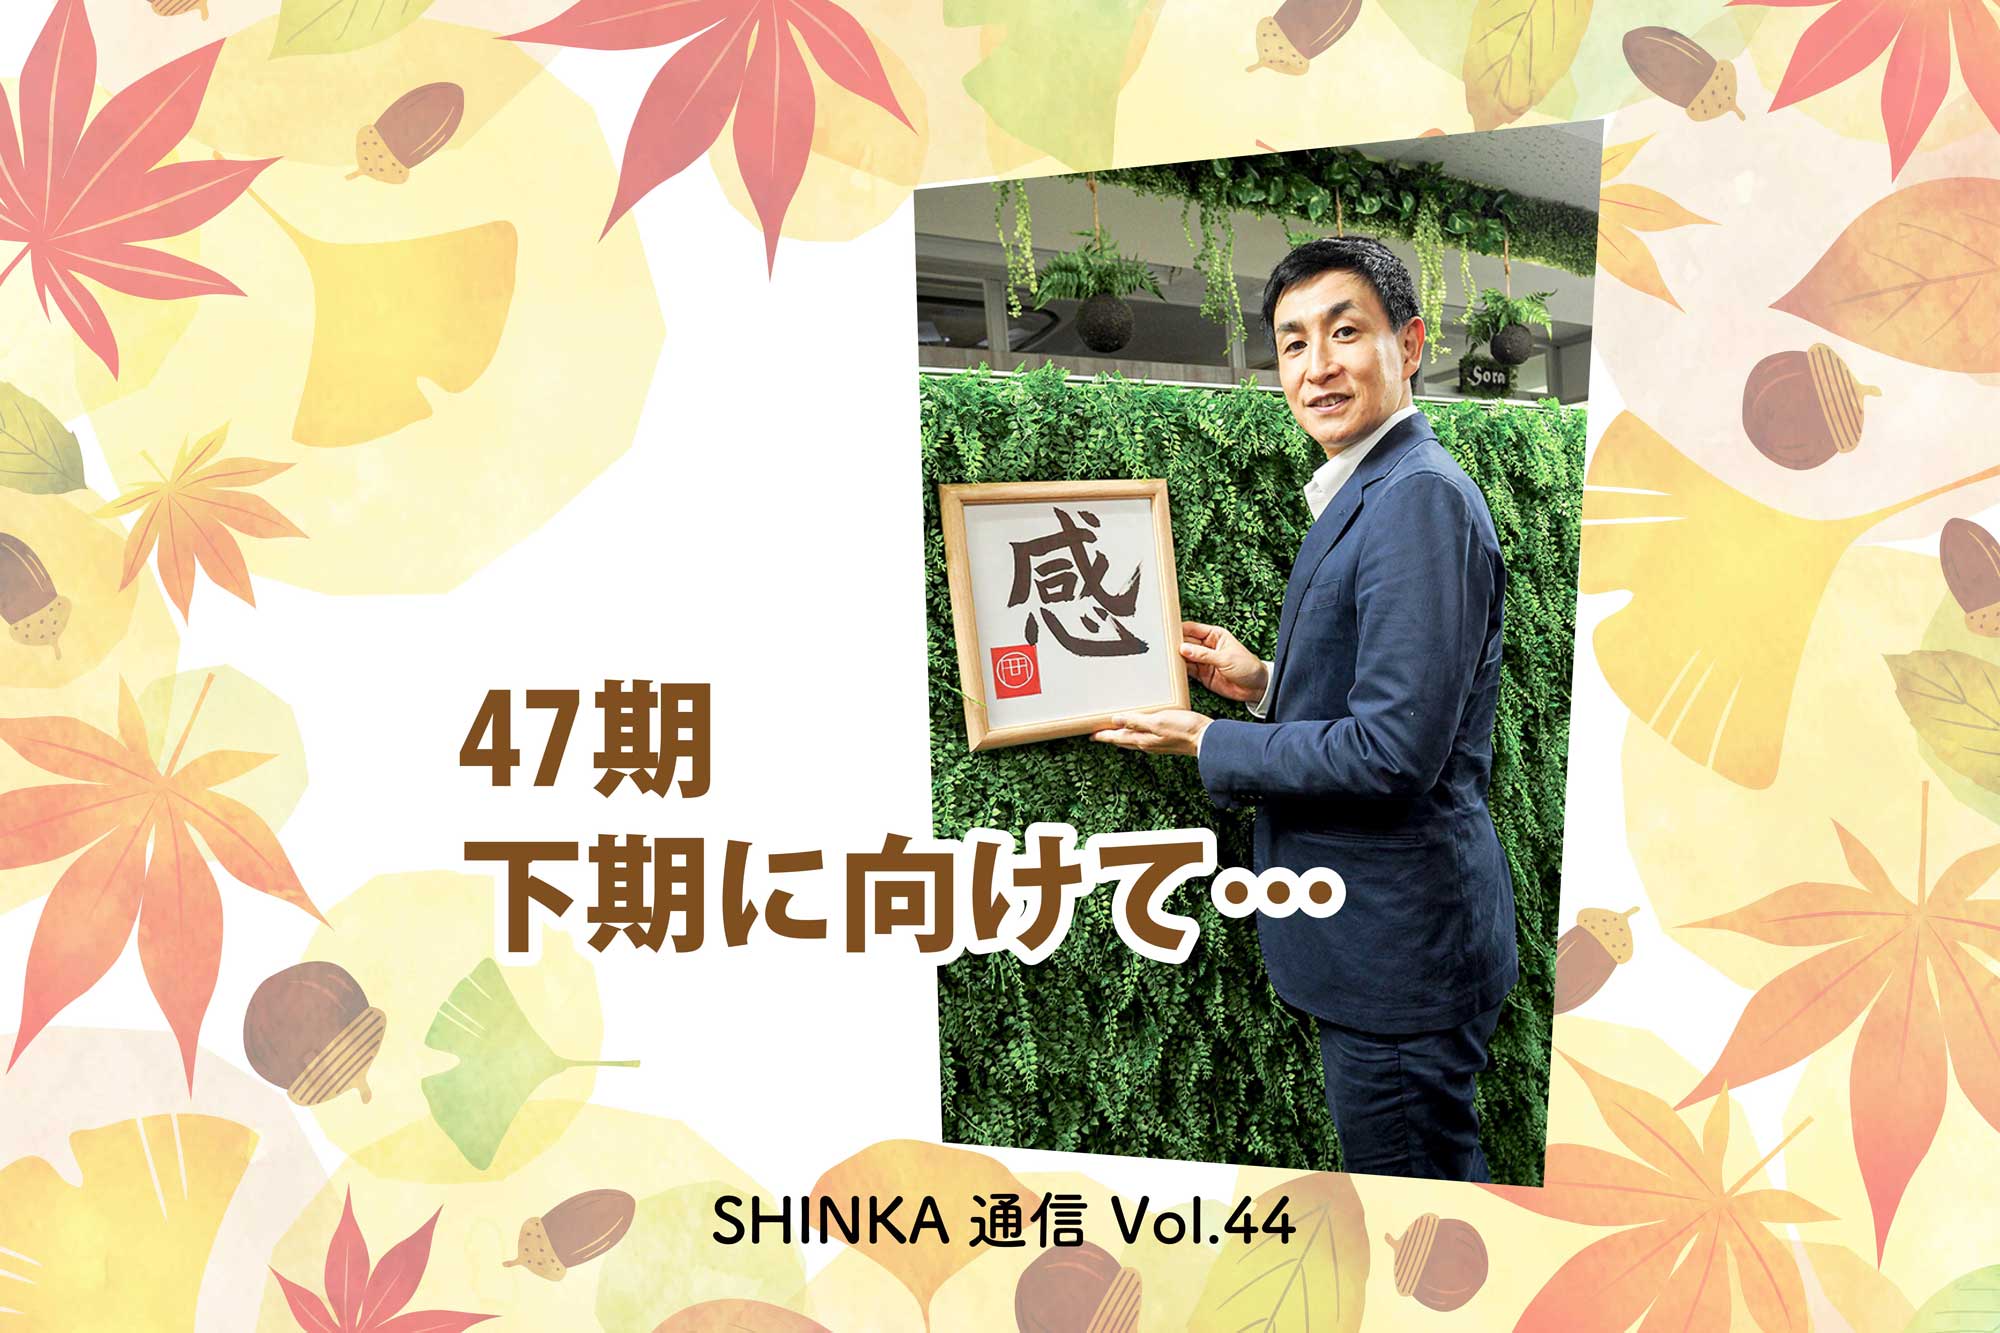 オカフーズSHINKA通信Vol.44｜47期 下期に向けて/「感」のメッセージ